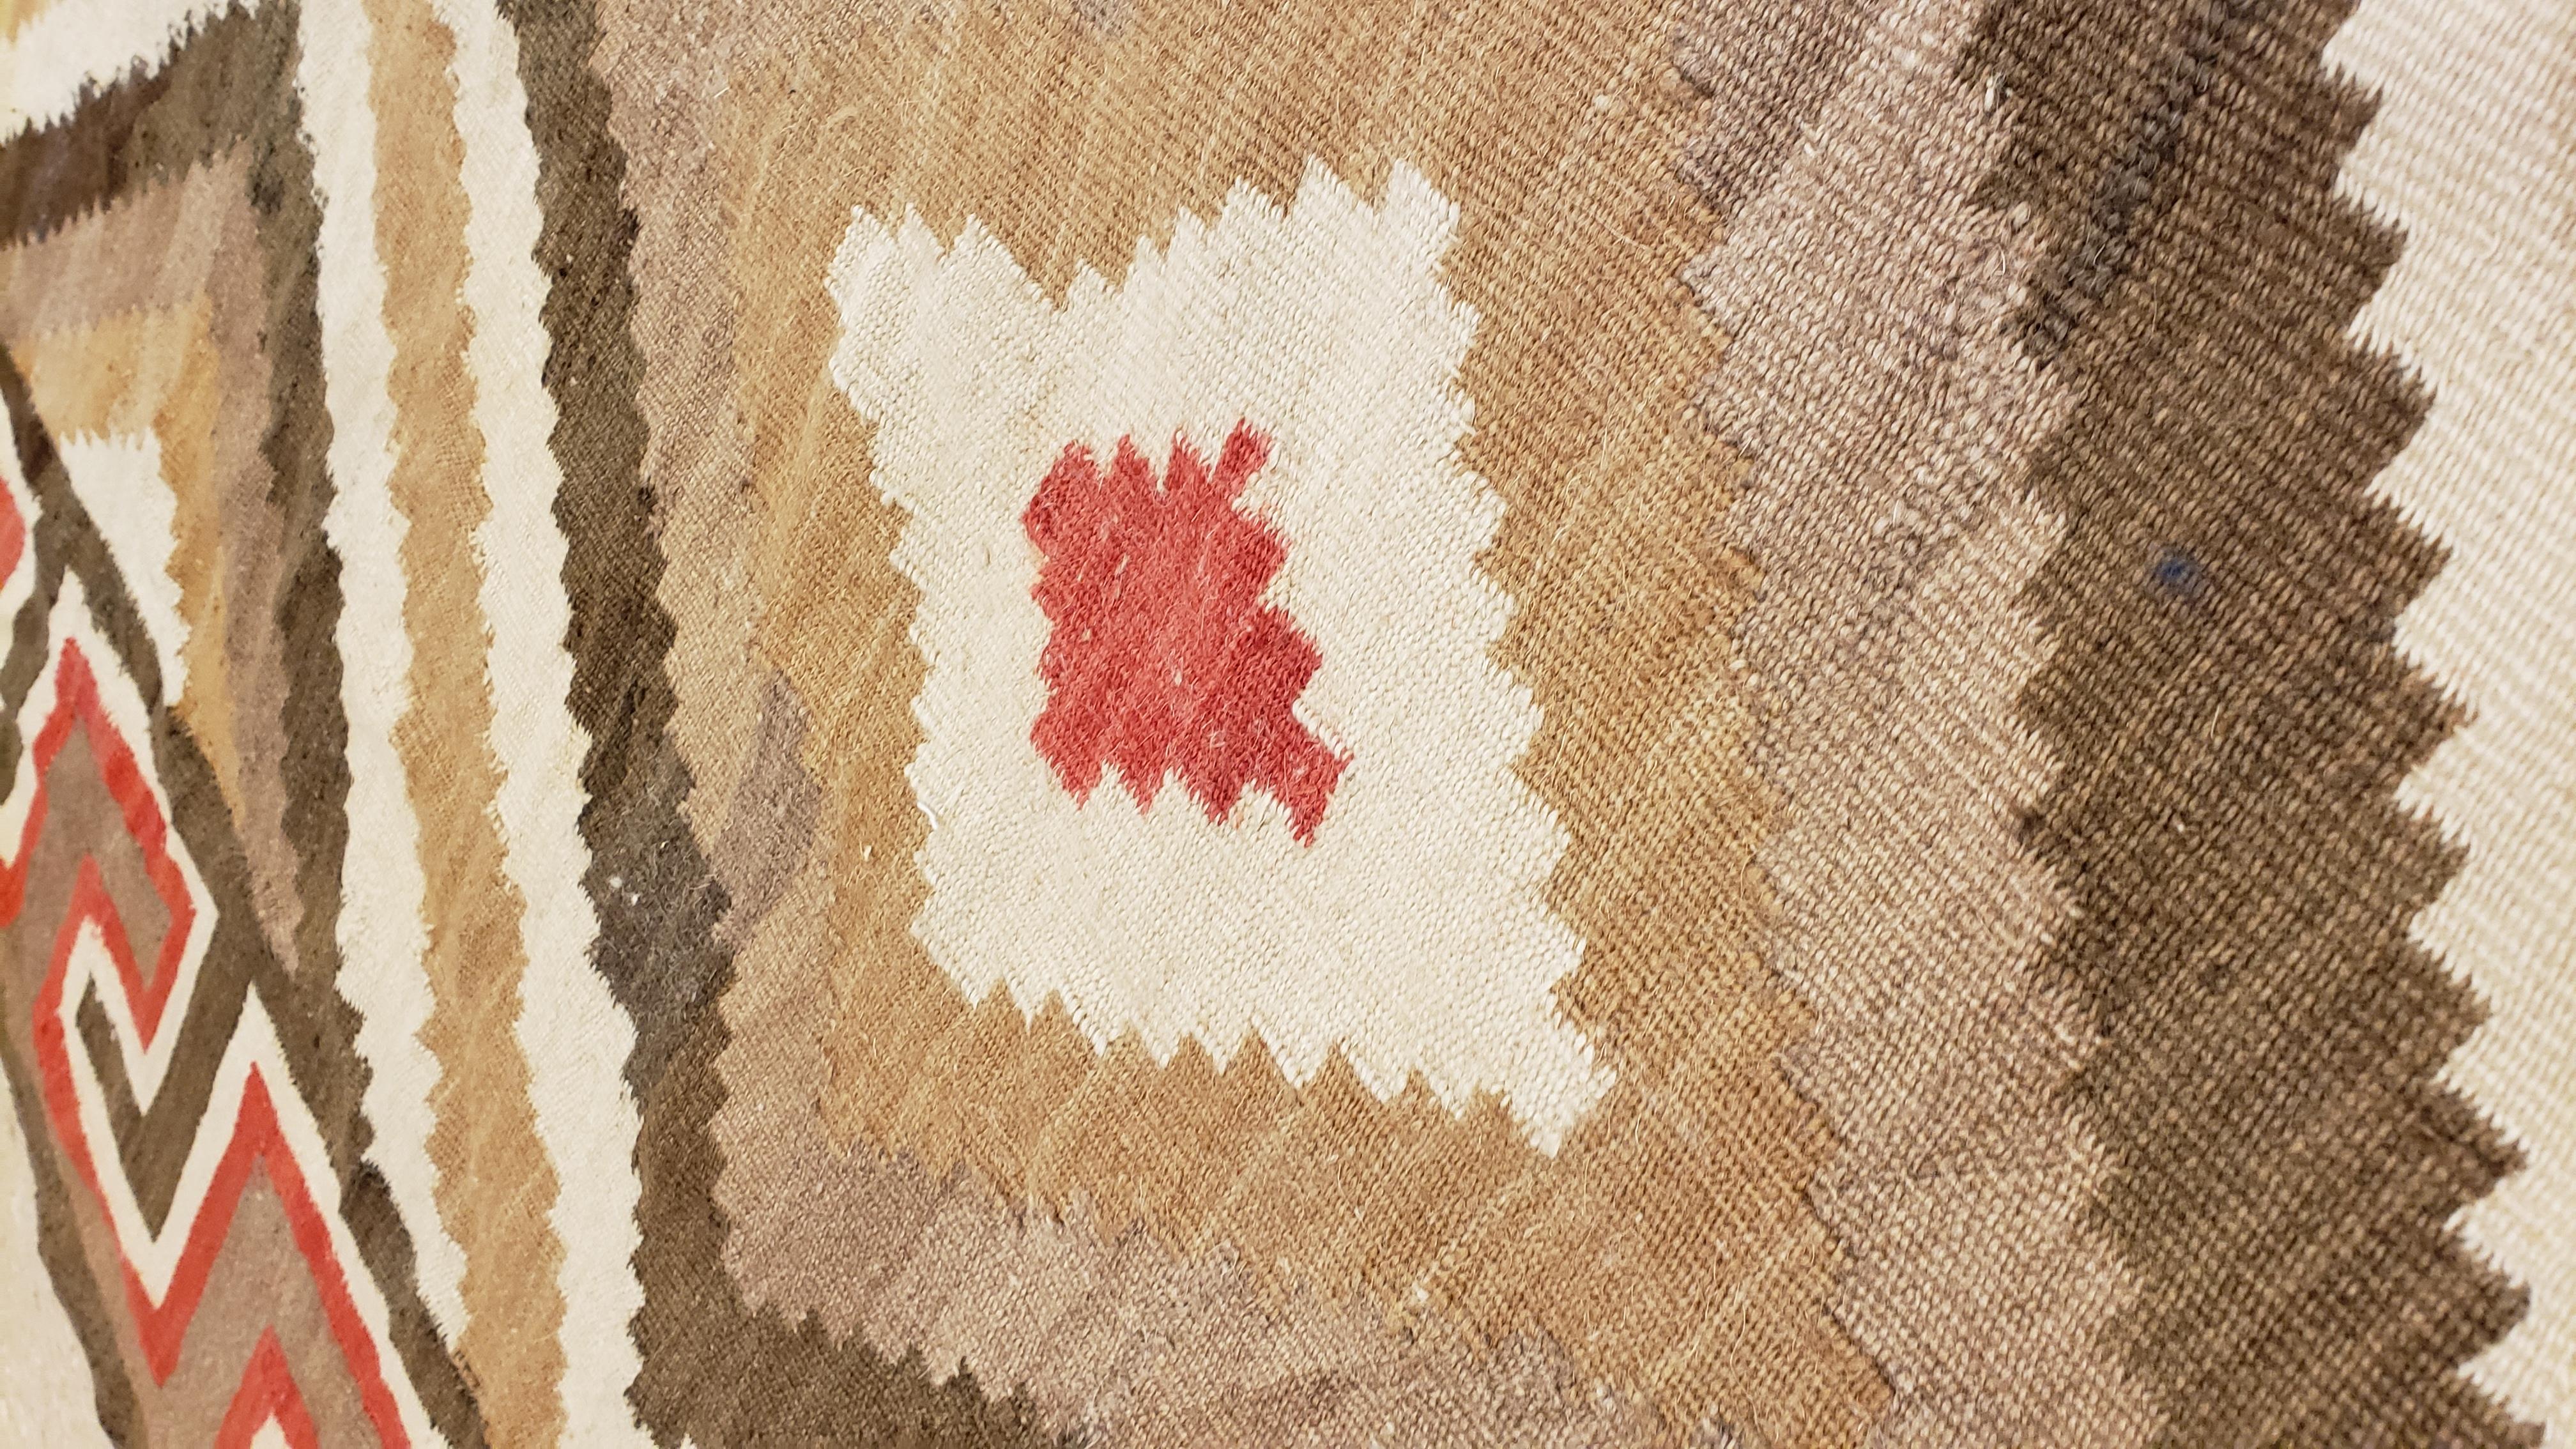 American Antique Eye Dazzler Navajo Carpet, Folk Rug, Handmade Wool, Beige, Red, Tan